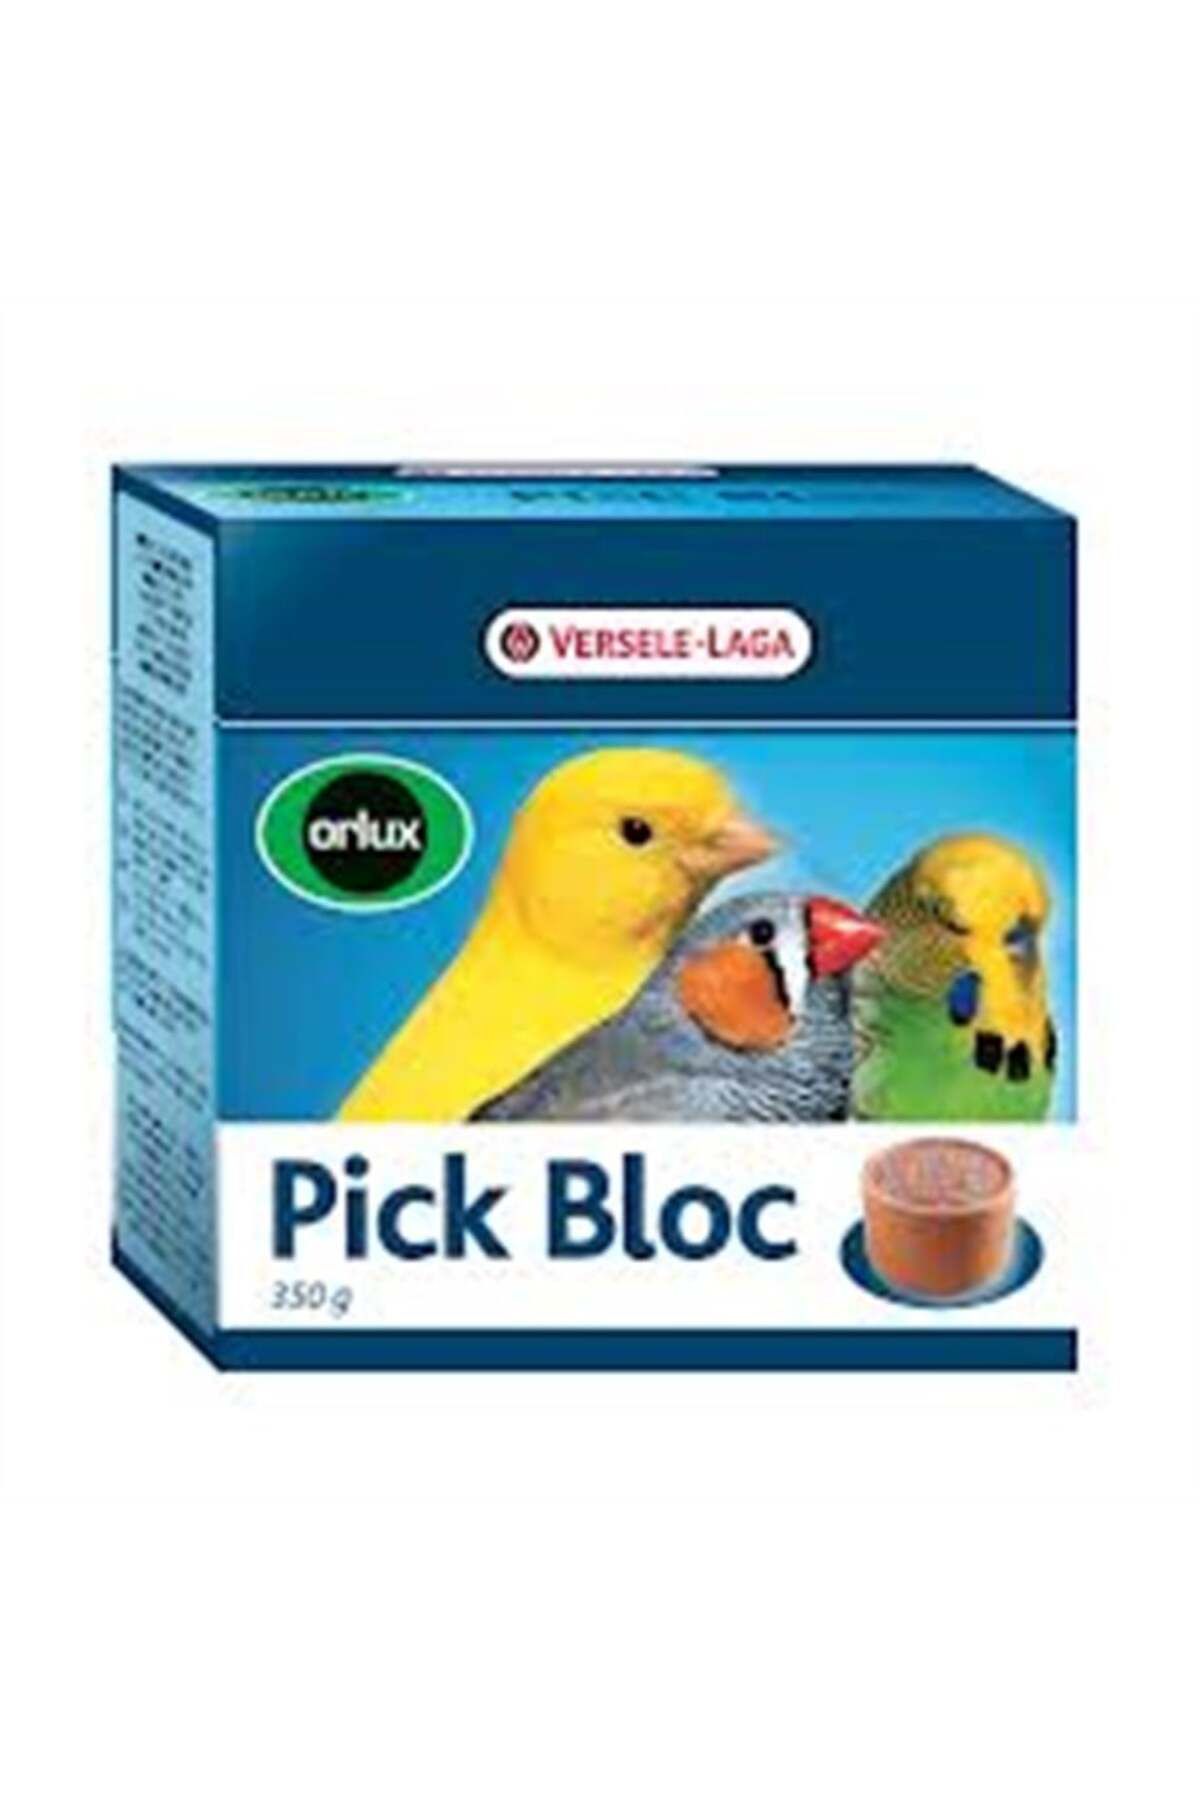 Versele Laga Orlux Pick Blok Bird 350gr